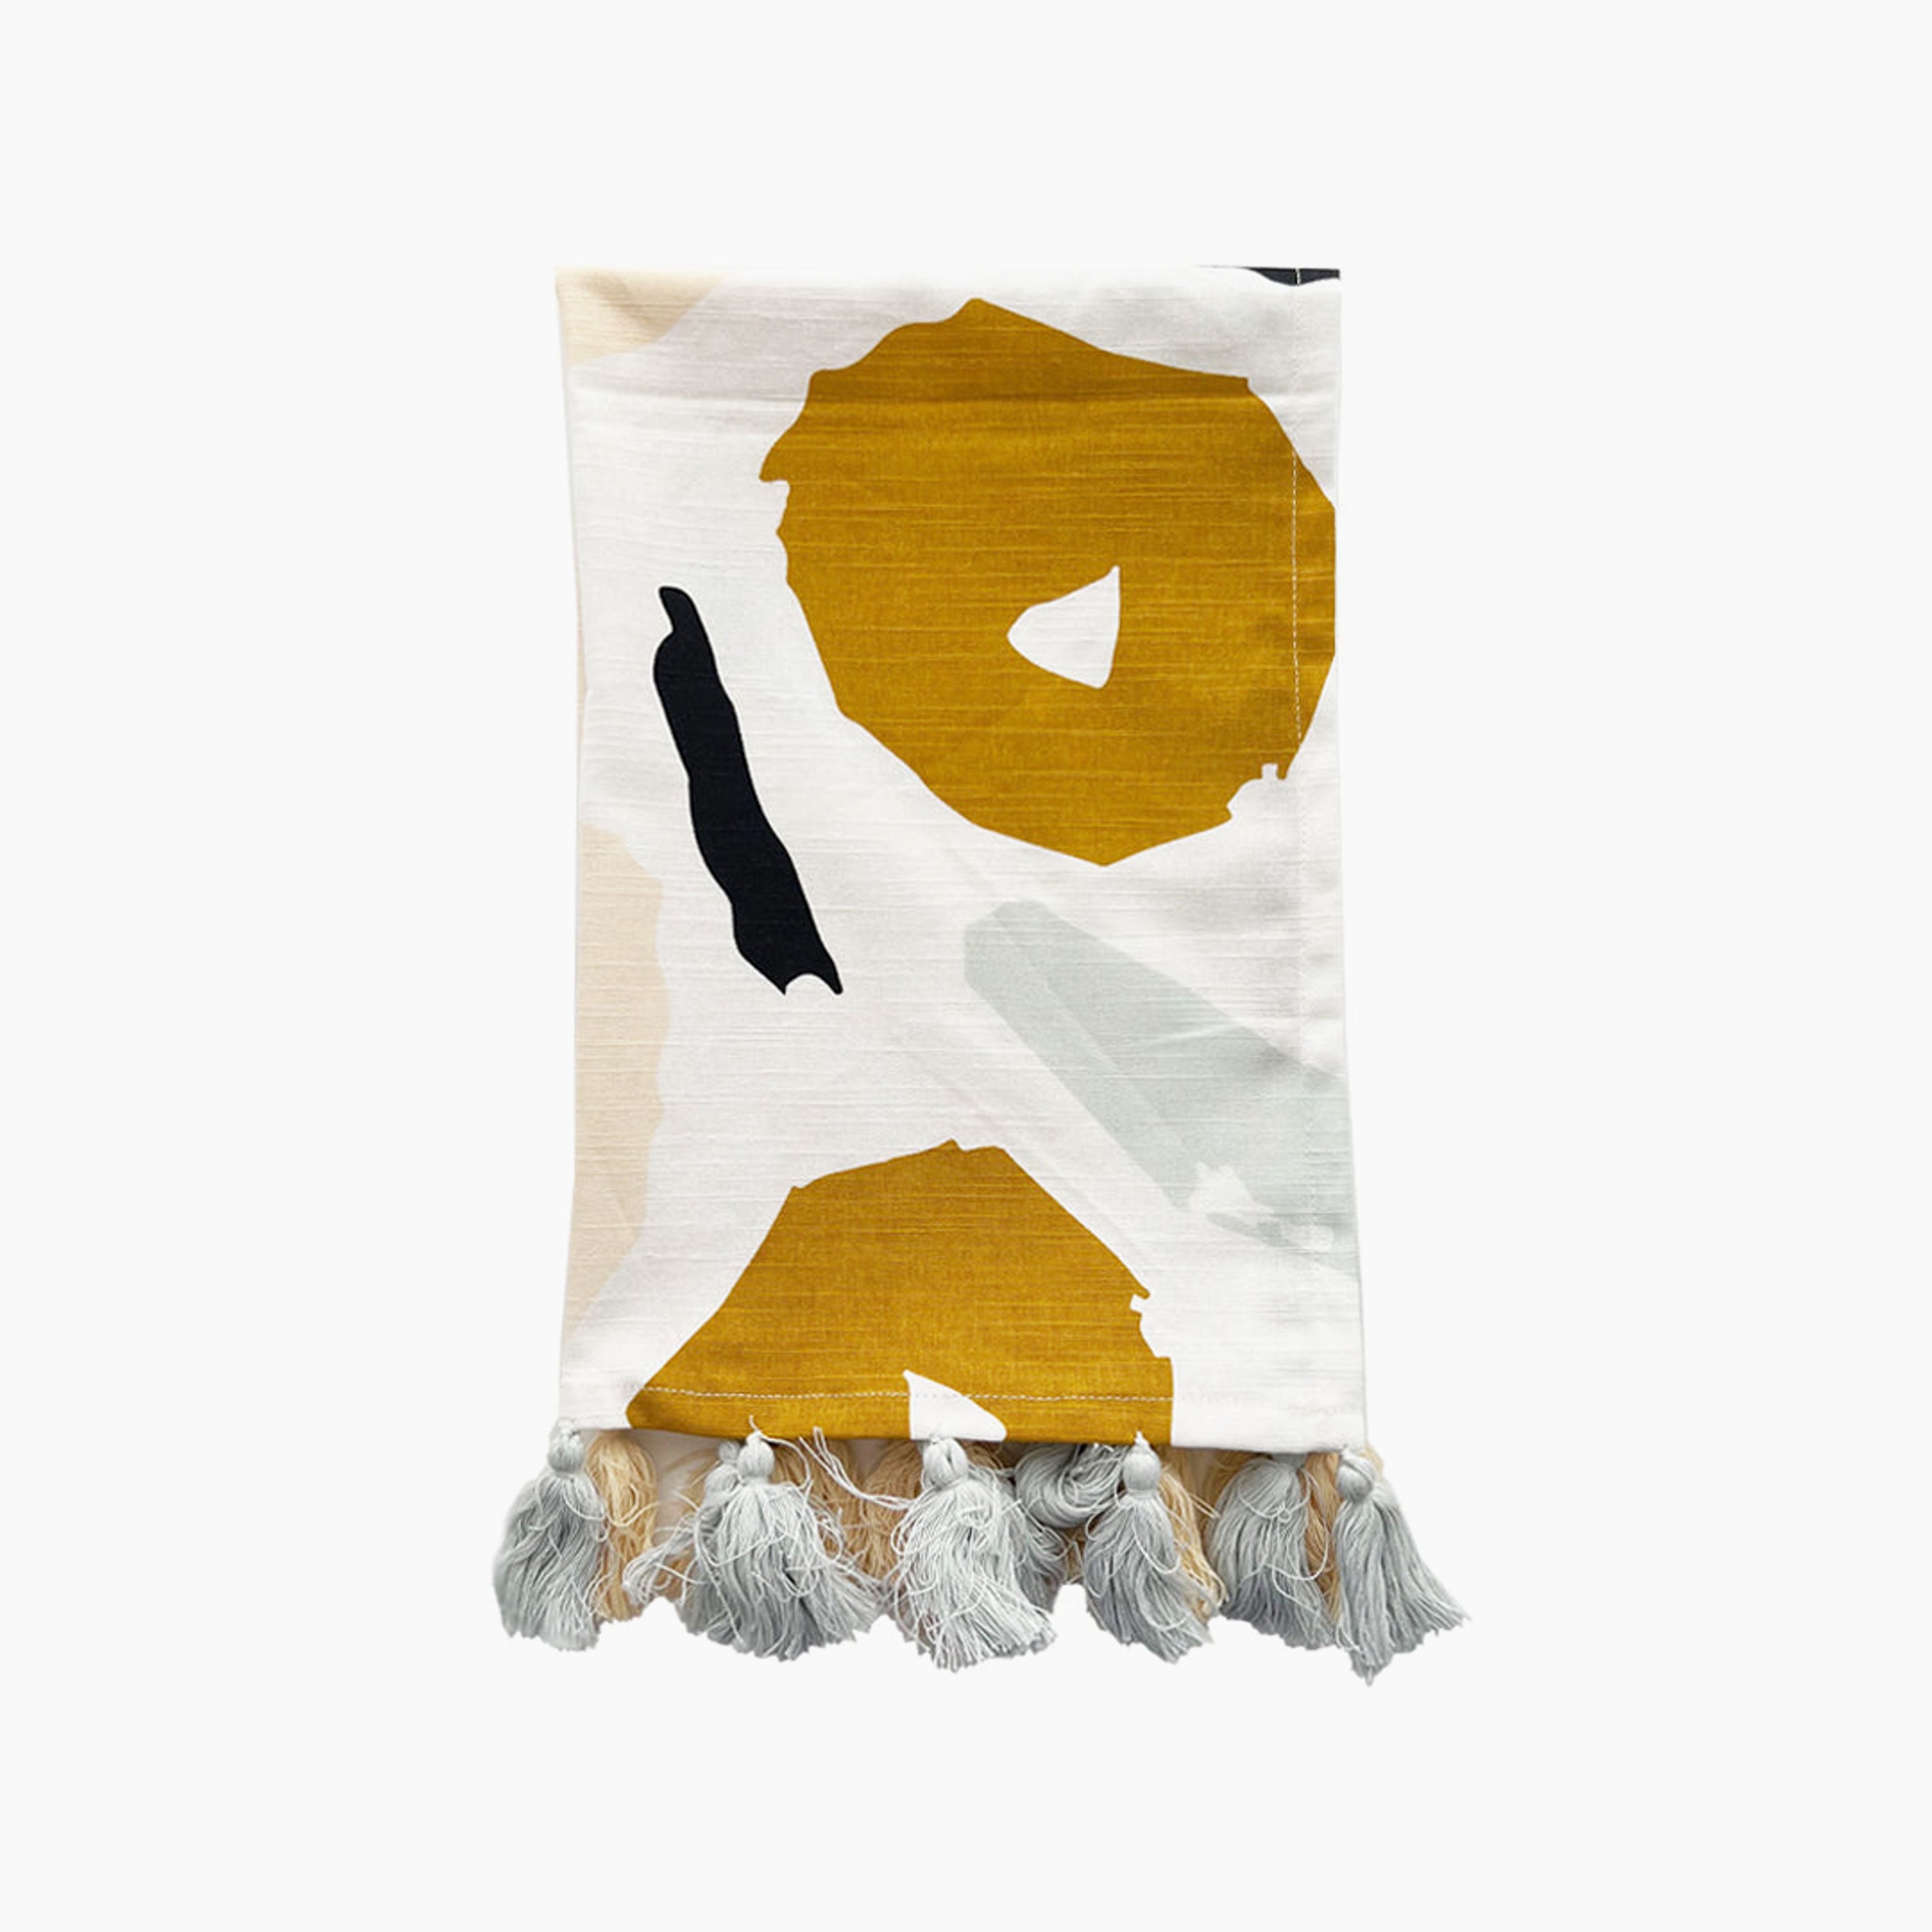 Textured Tea Towel - Bloom (fringed edge)